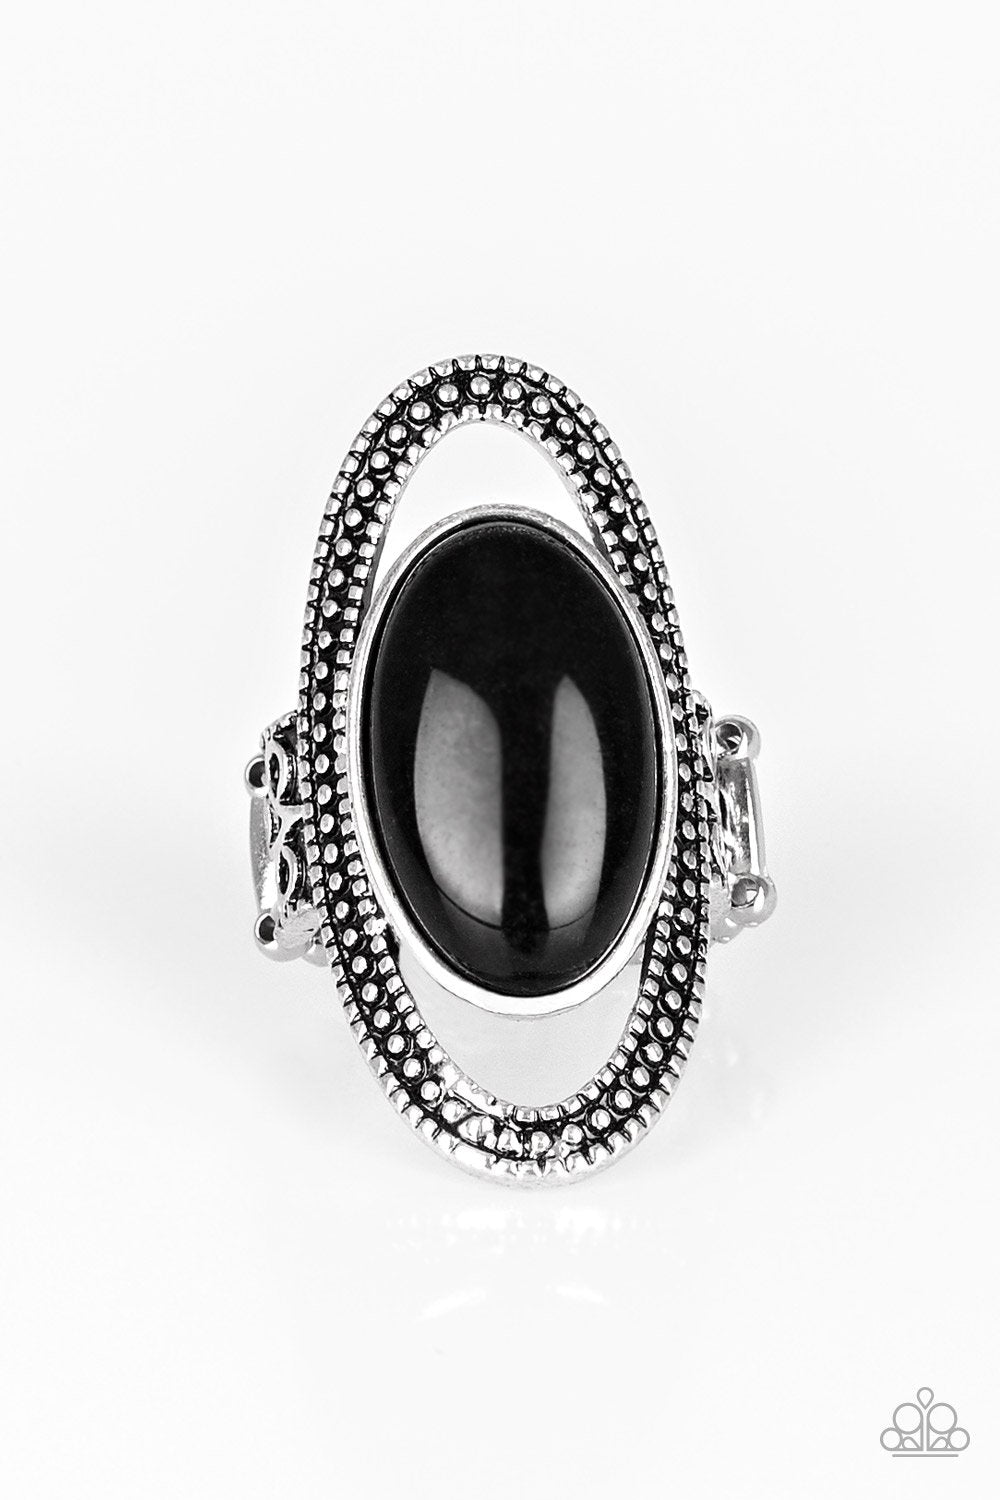 Western Royalty Black Ring - Daria's Blings N Things